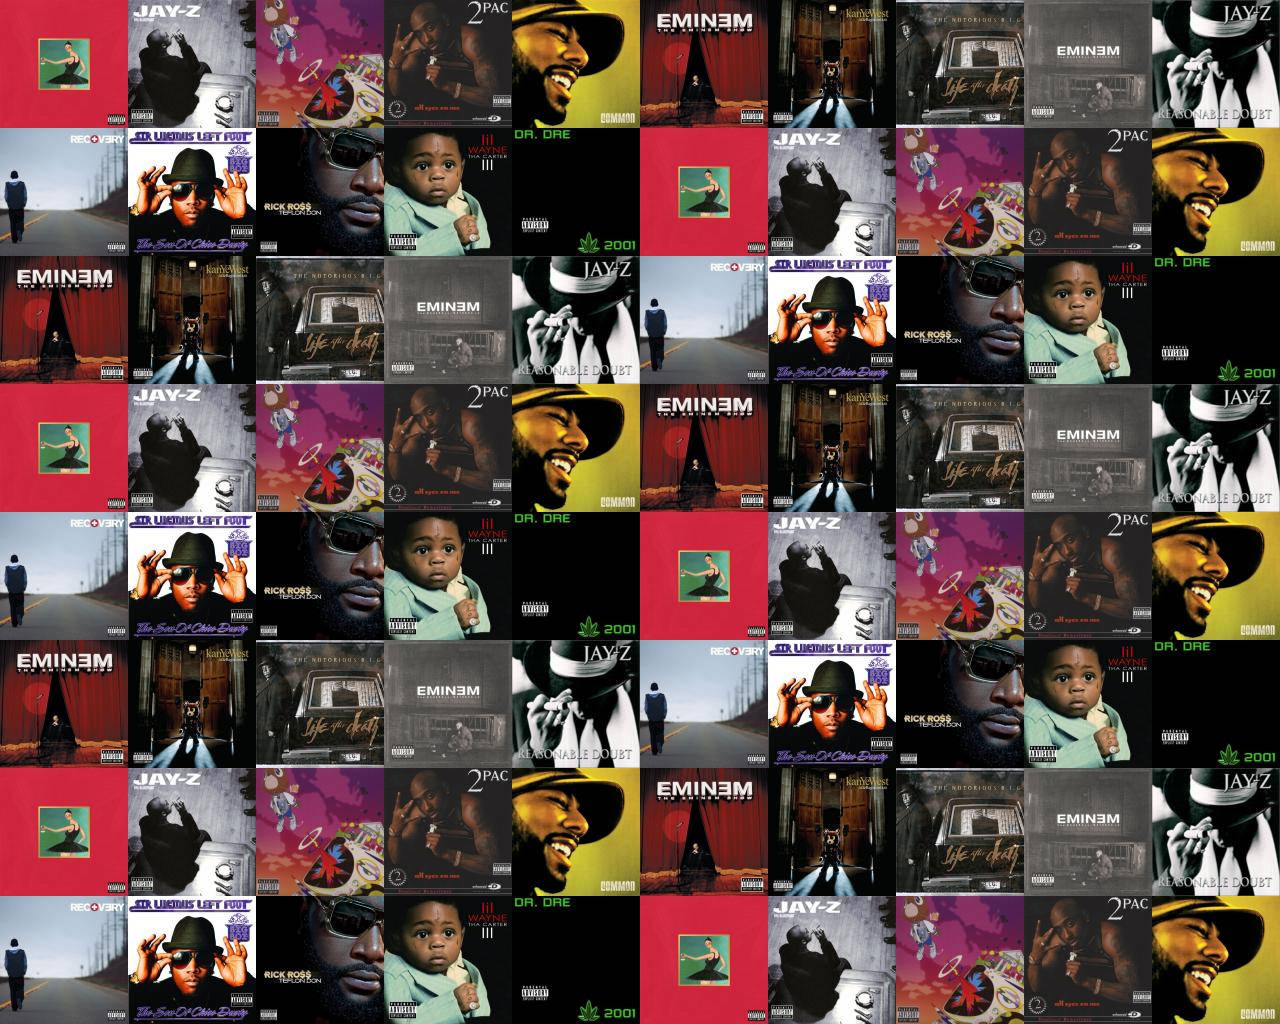 Orapper Kanye West Apresenta Sua Música Criativa De Gênero Desafiador Na Capa De Seu Álbum. Papel de Parede